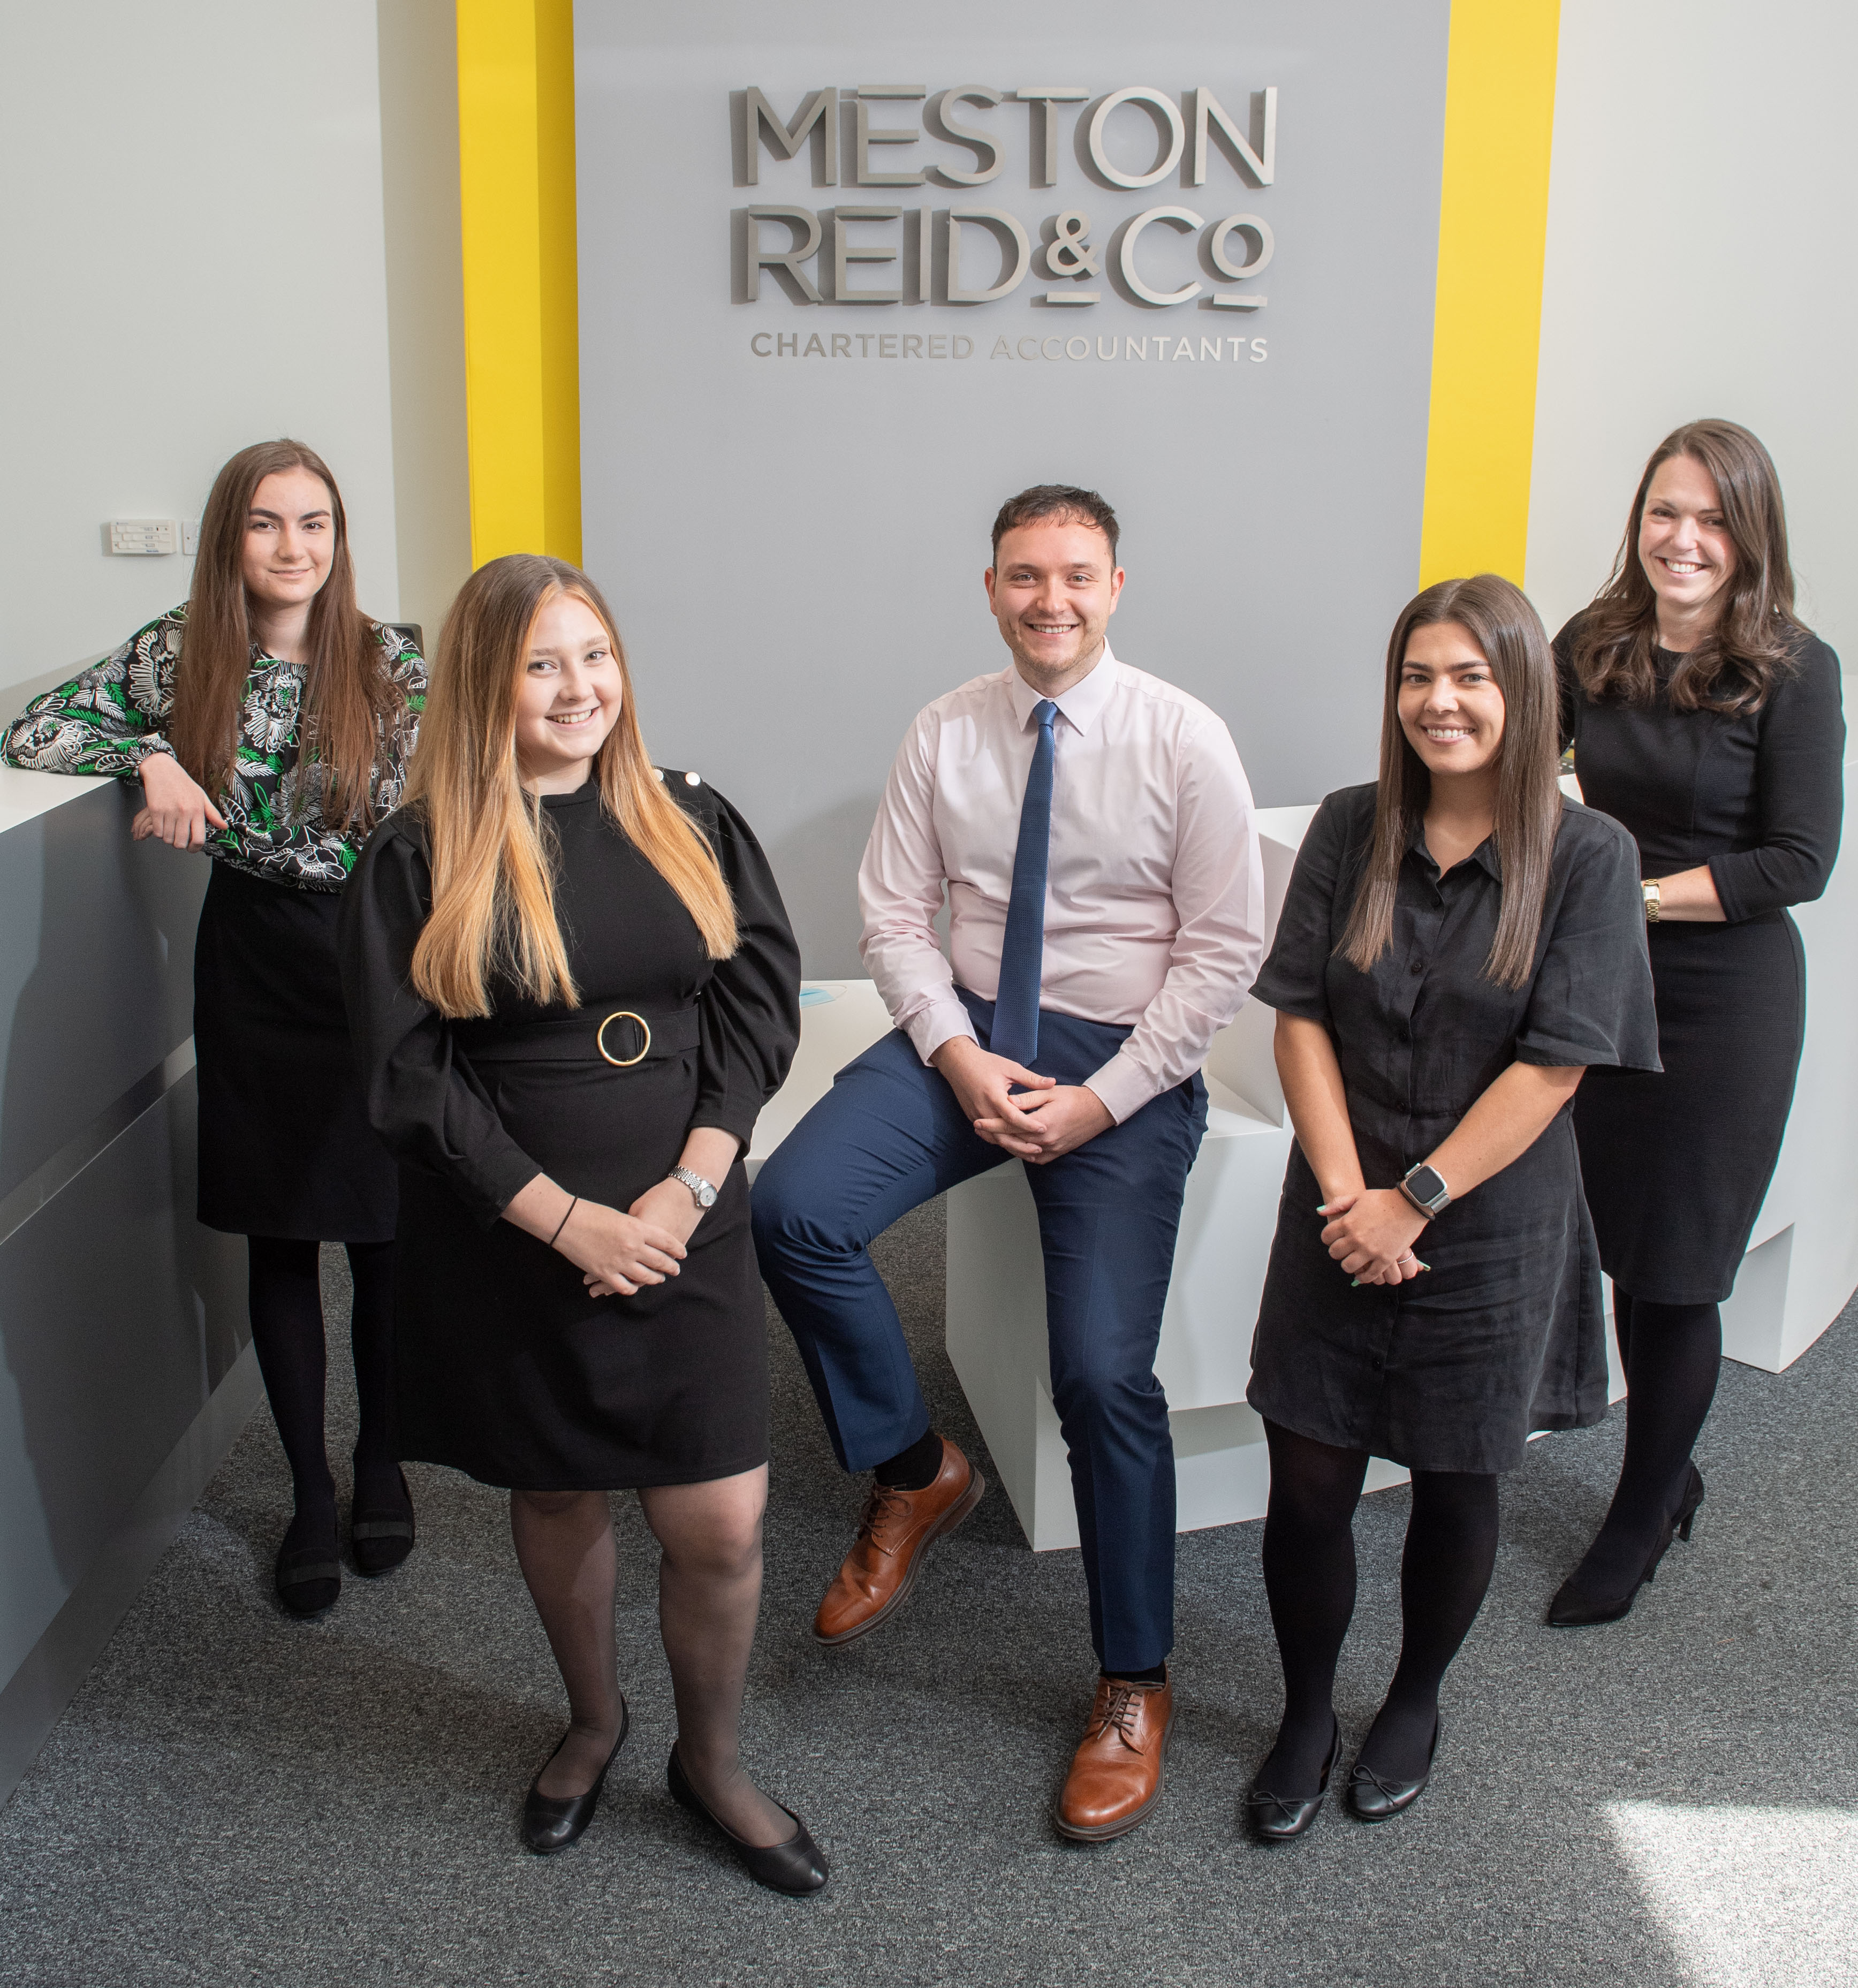 Meston Reid & Co brings new accountancy trainees on board